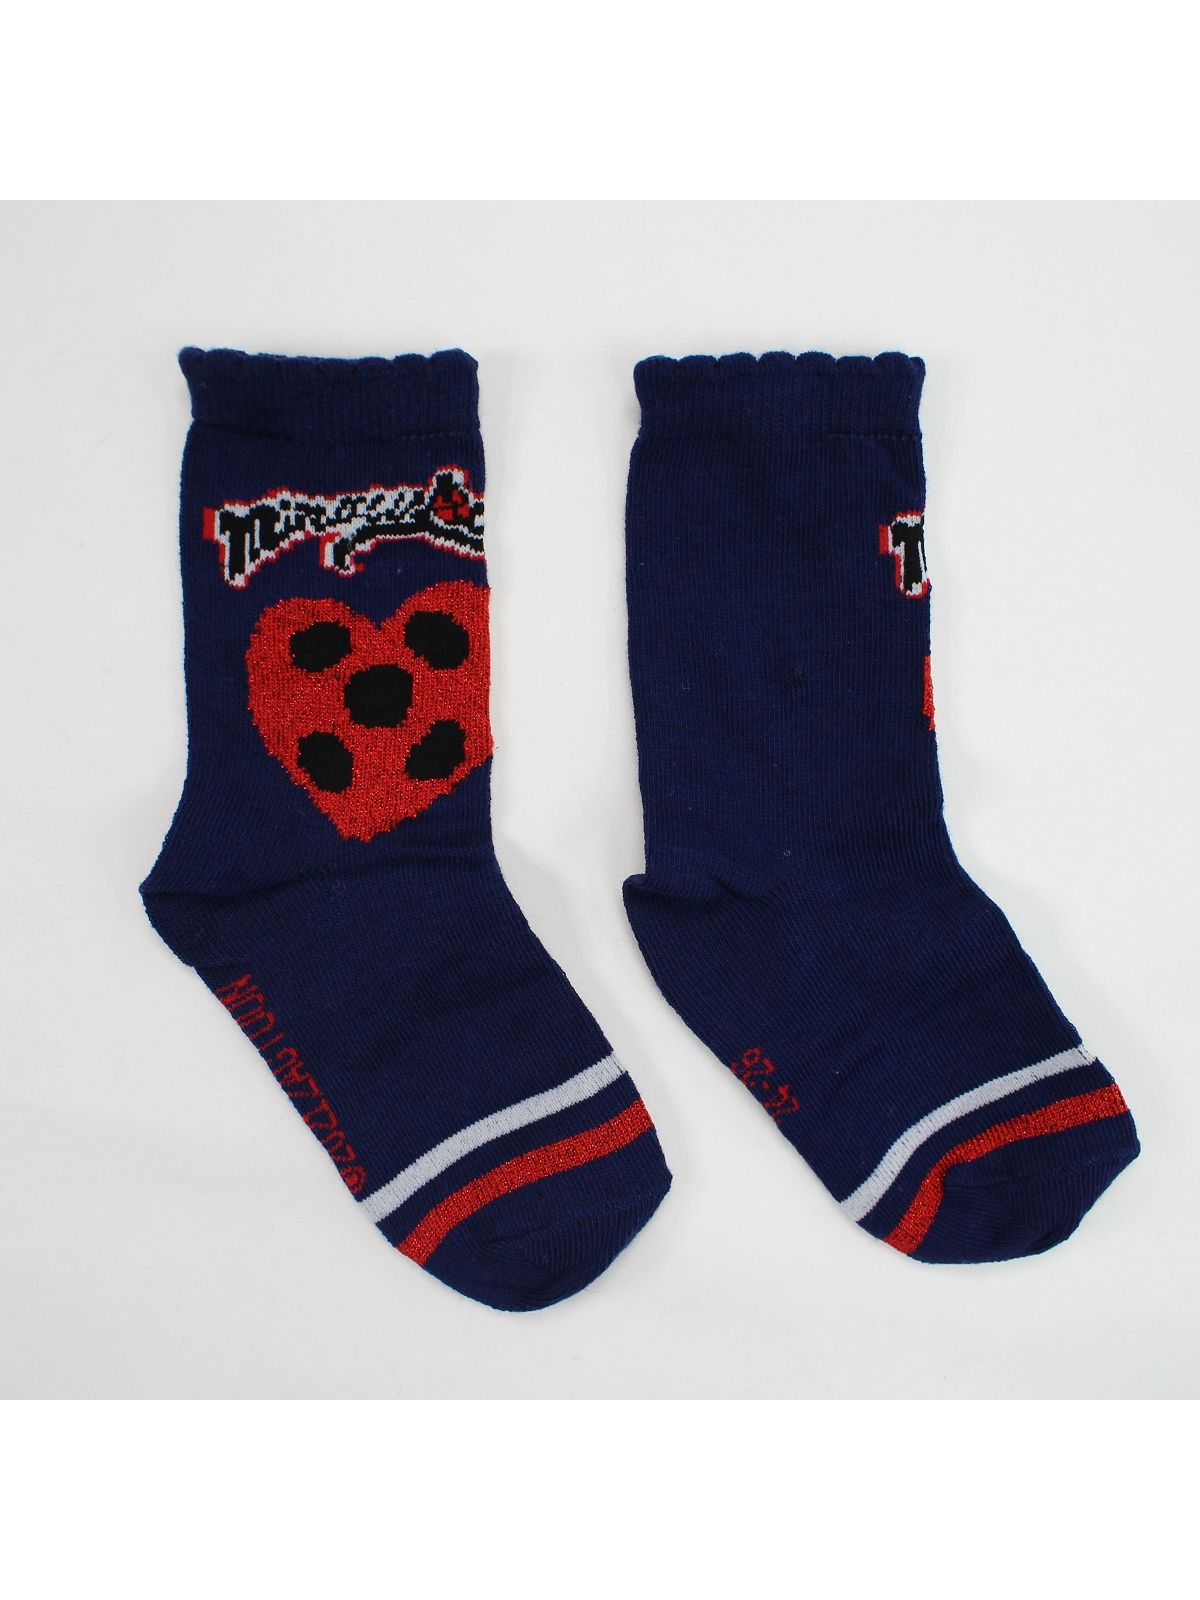 Ladybug Pack of 10 pairs of socks